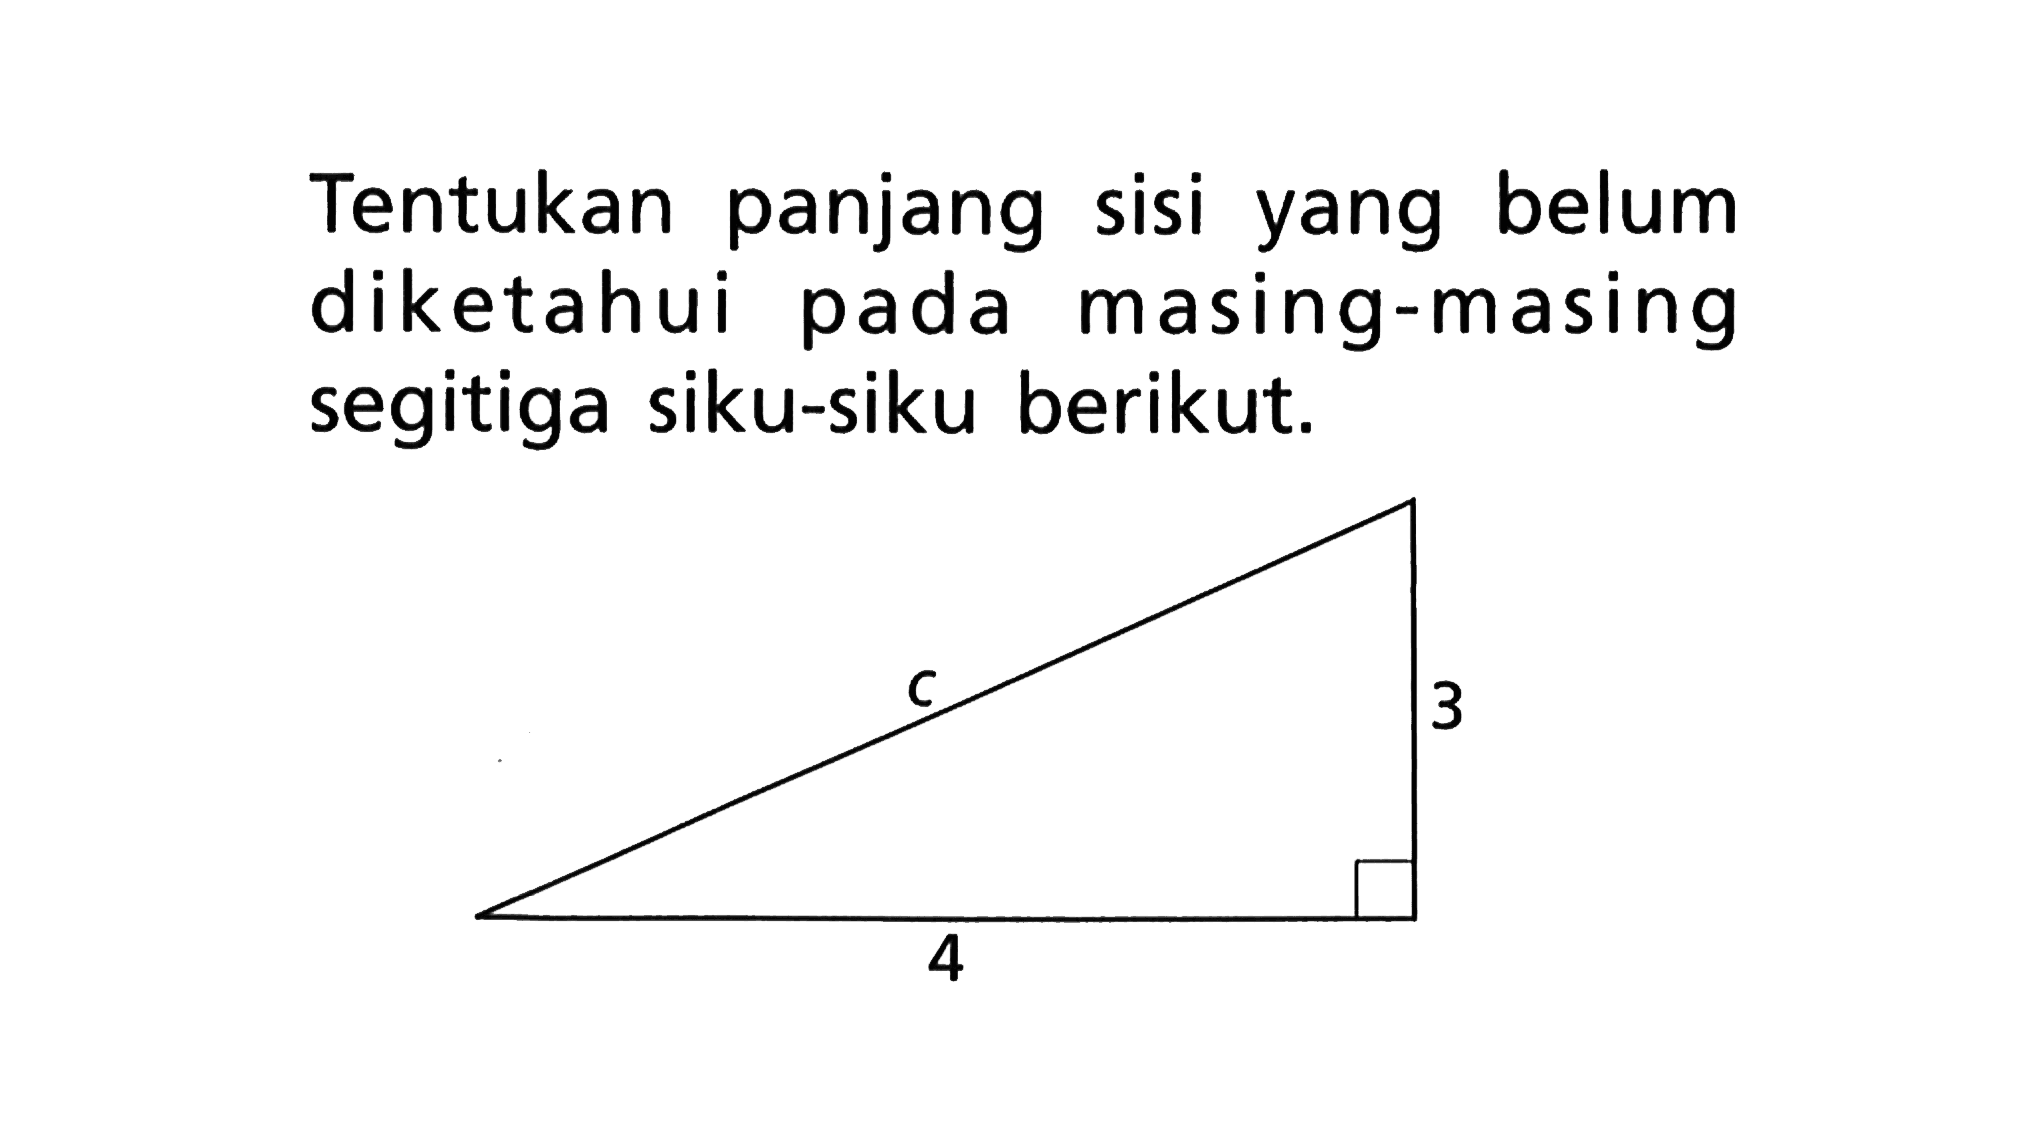 Tentukan panjang sisi yang belum diketahui pada masing-masing segitiga siku-siku berikut. c 3 4